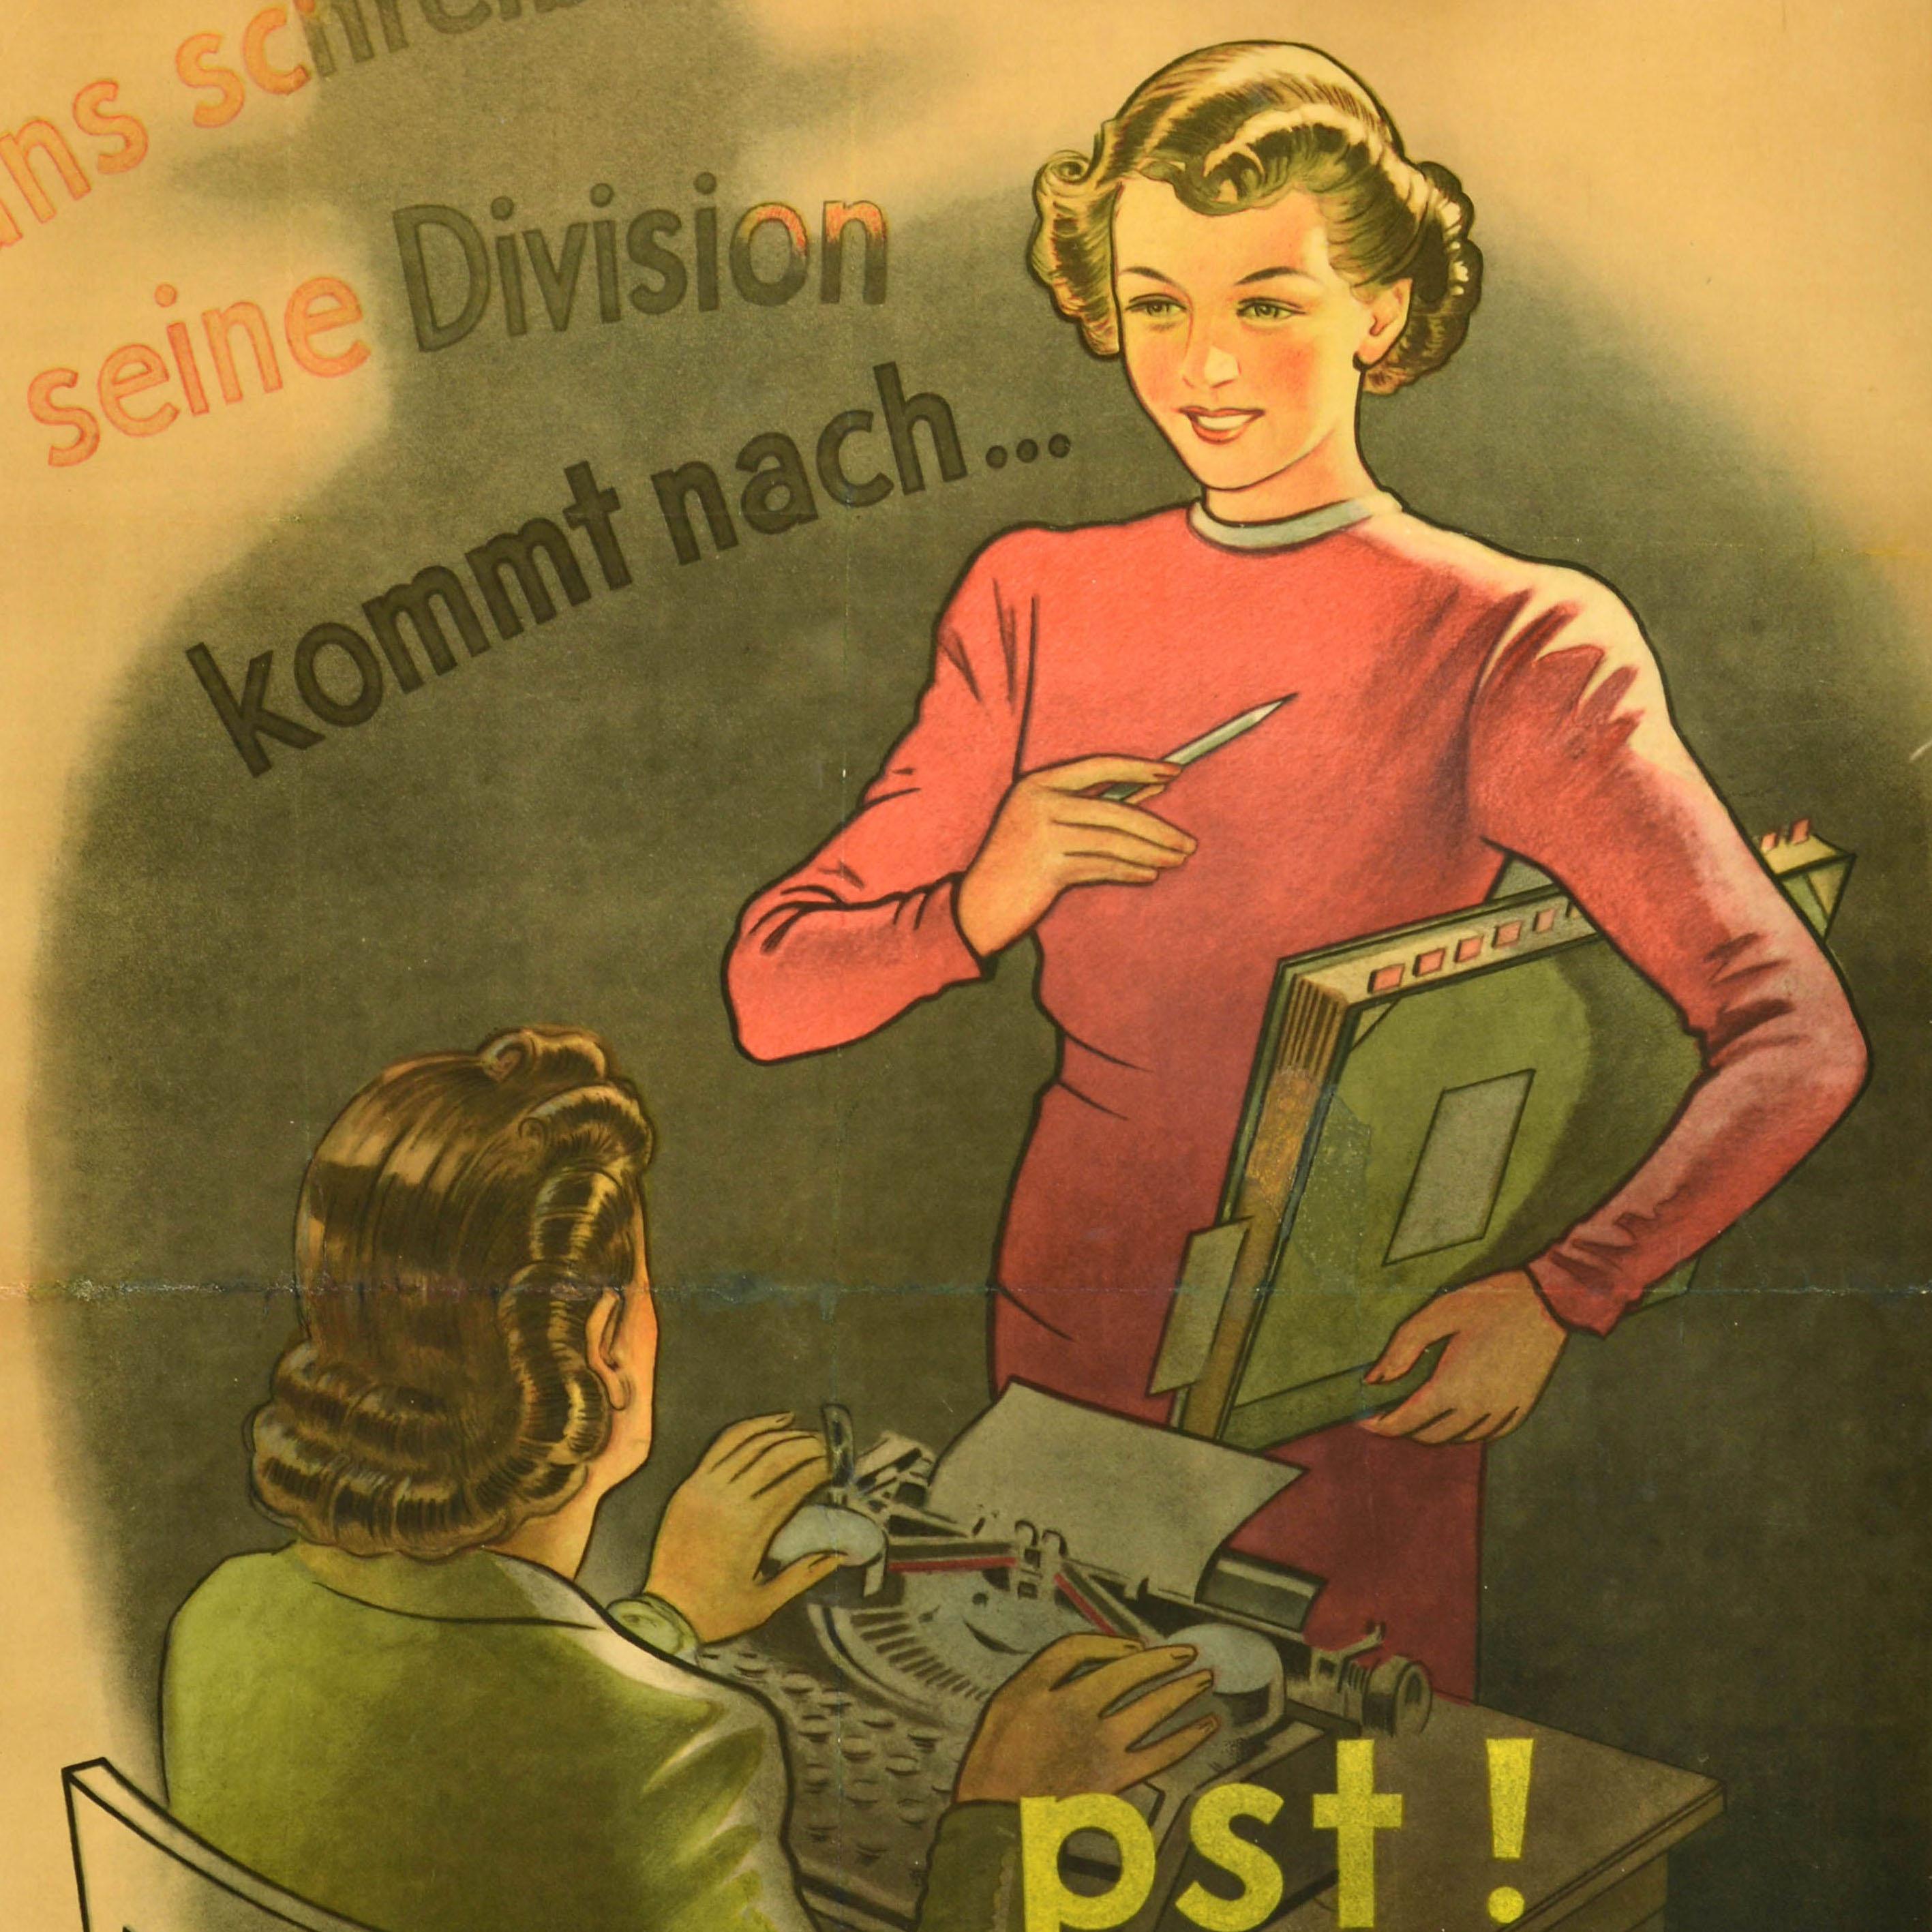 Originalplakat aus dem Zweiten Weltkrieg, herausgegeben in Nazi-Deutschland - Hans schreibt seine Division kommt nach... pst! Feind hort mit! / Hans schreibt, seine Abteilung kommt nach... psst! Der Feind hört mit! - mit einer Sekretärin, die auf